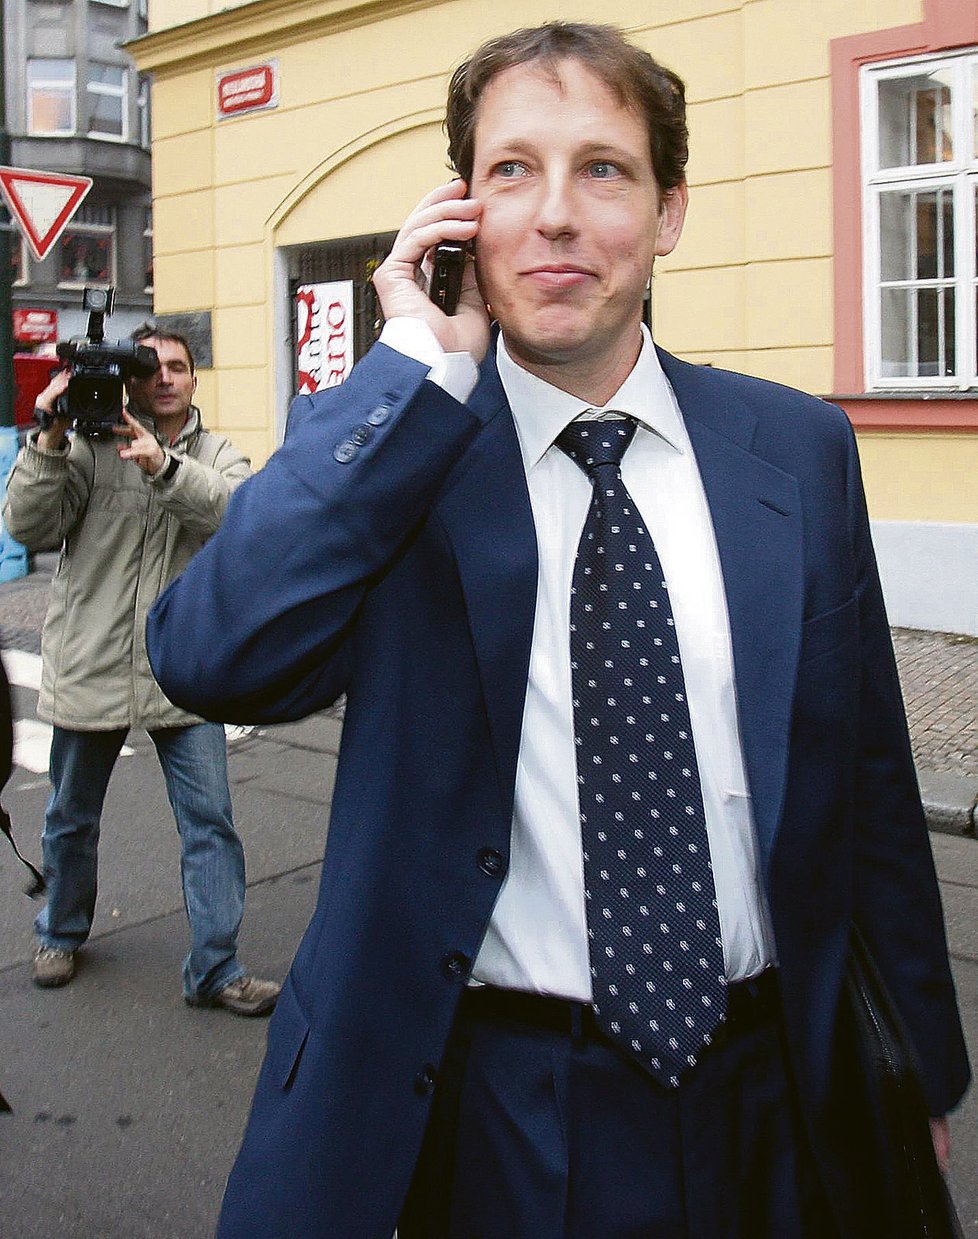 Gross patřil k podivným studentům Západočeské univerzity v Plzni. V březnu 2004 tu získal titul JUDr. Kvalita jeho diplomové práce byla opakovaně zpochybňována.